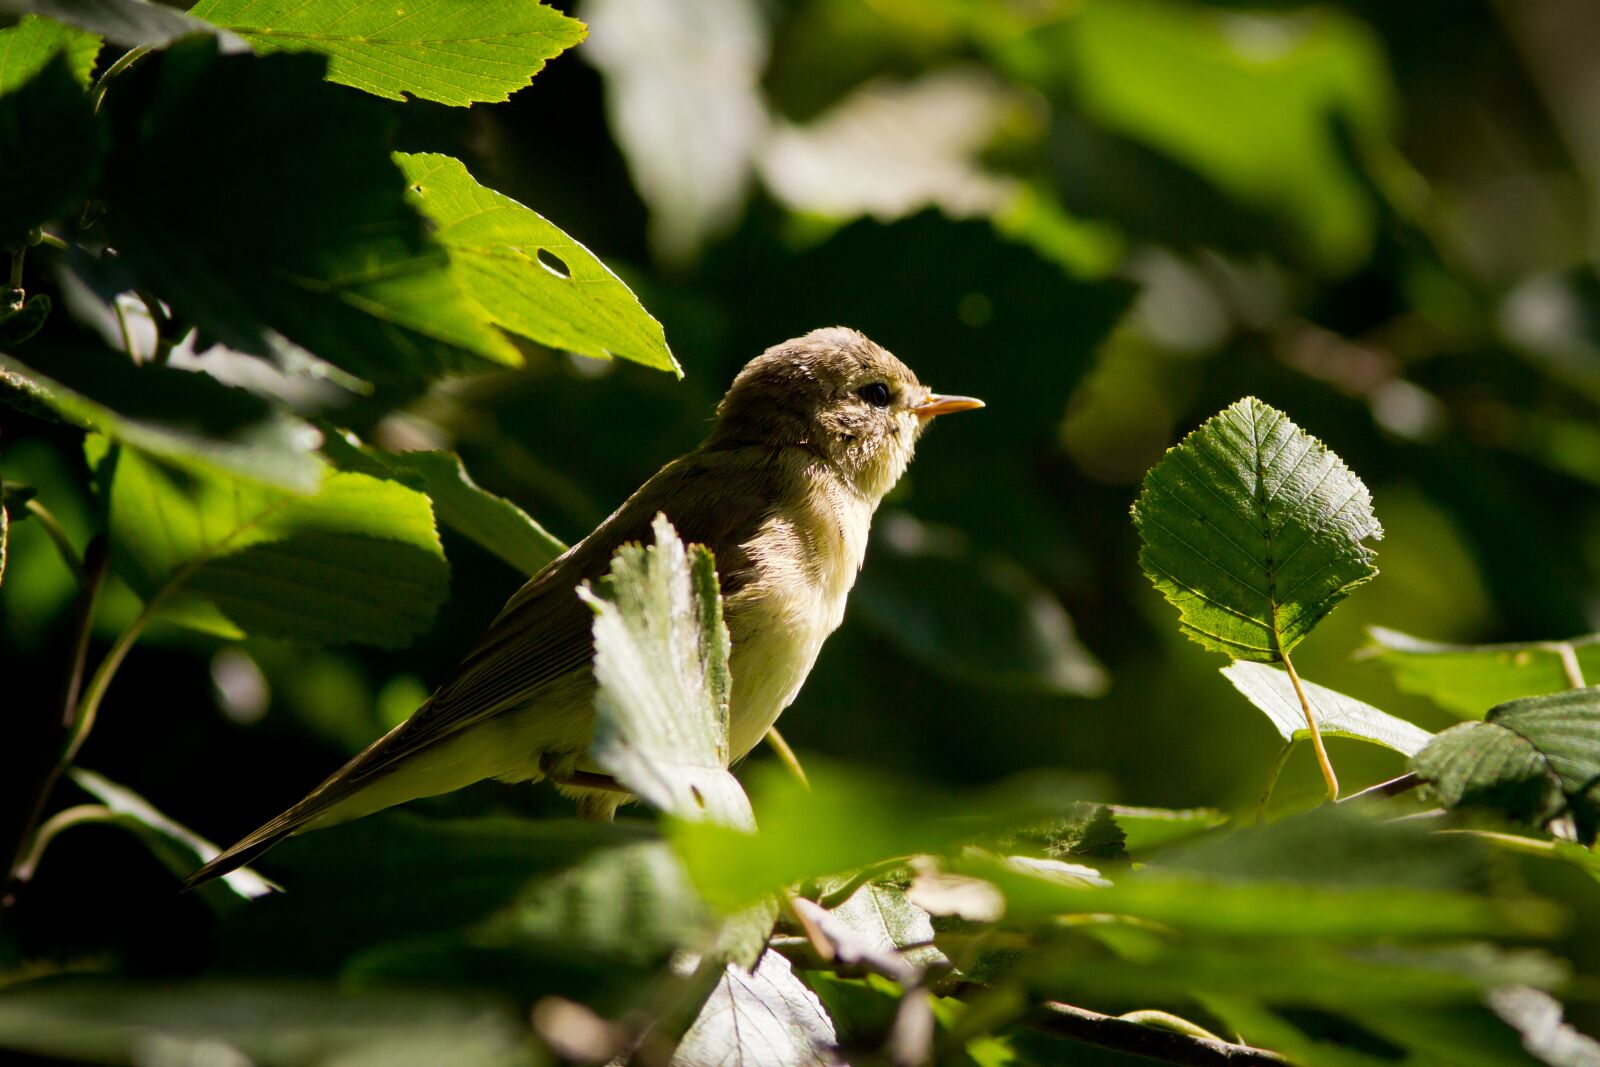 Canon EOS 7D sample photo. "Willow, bird, animals" photography